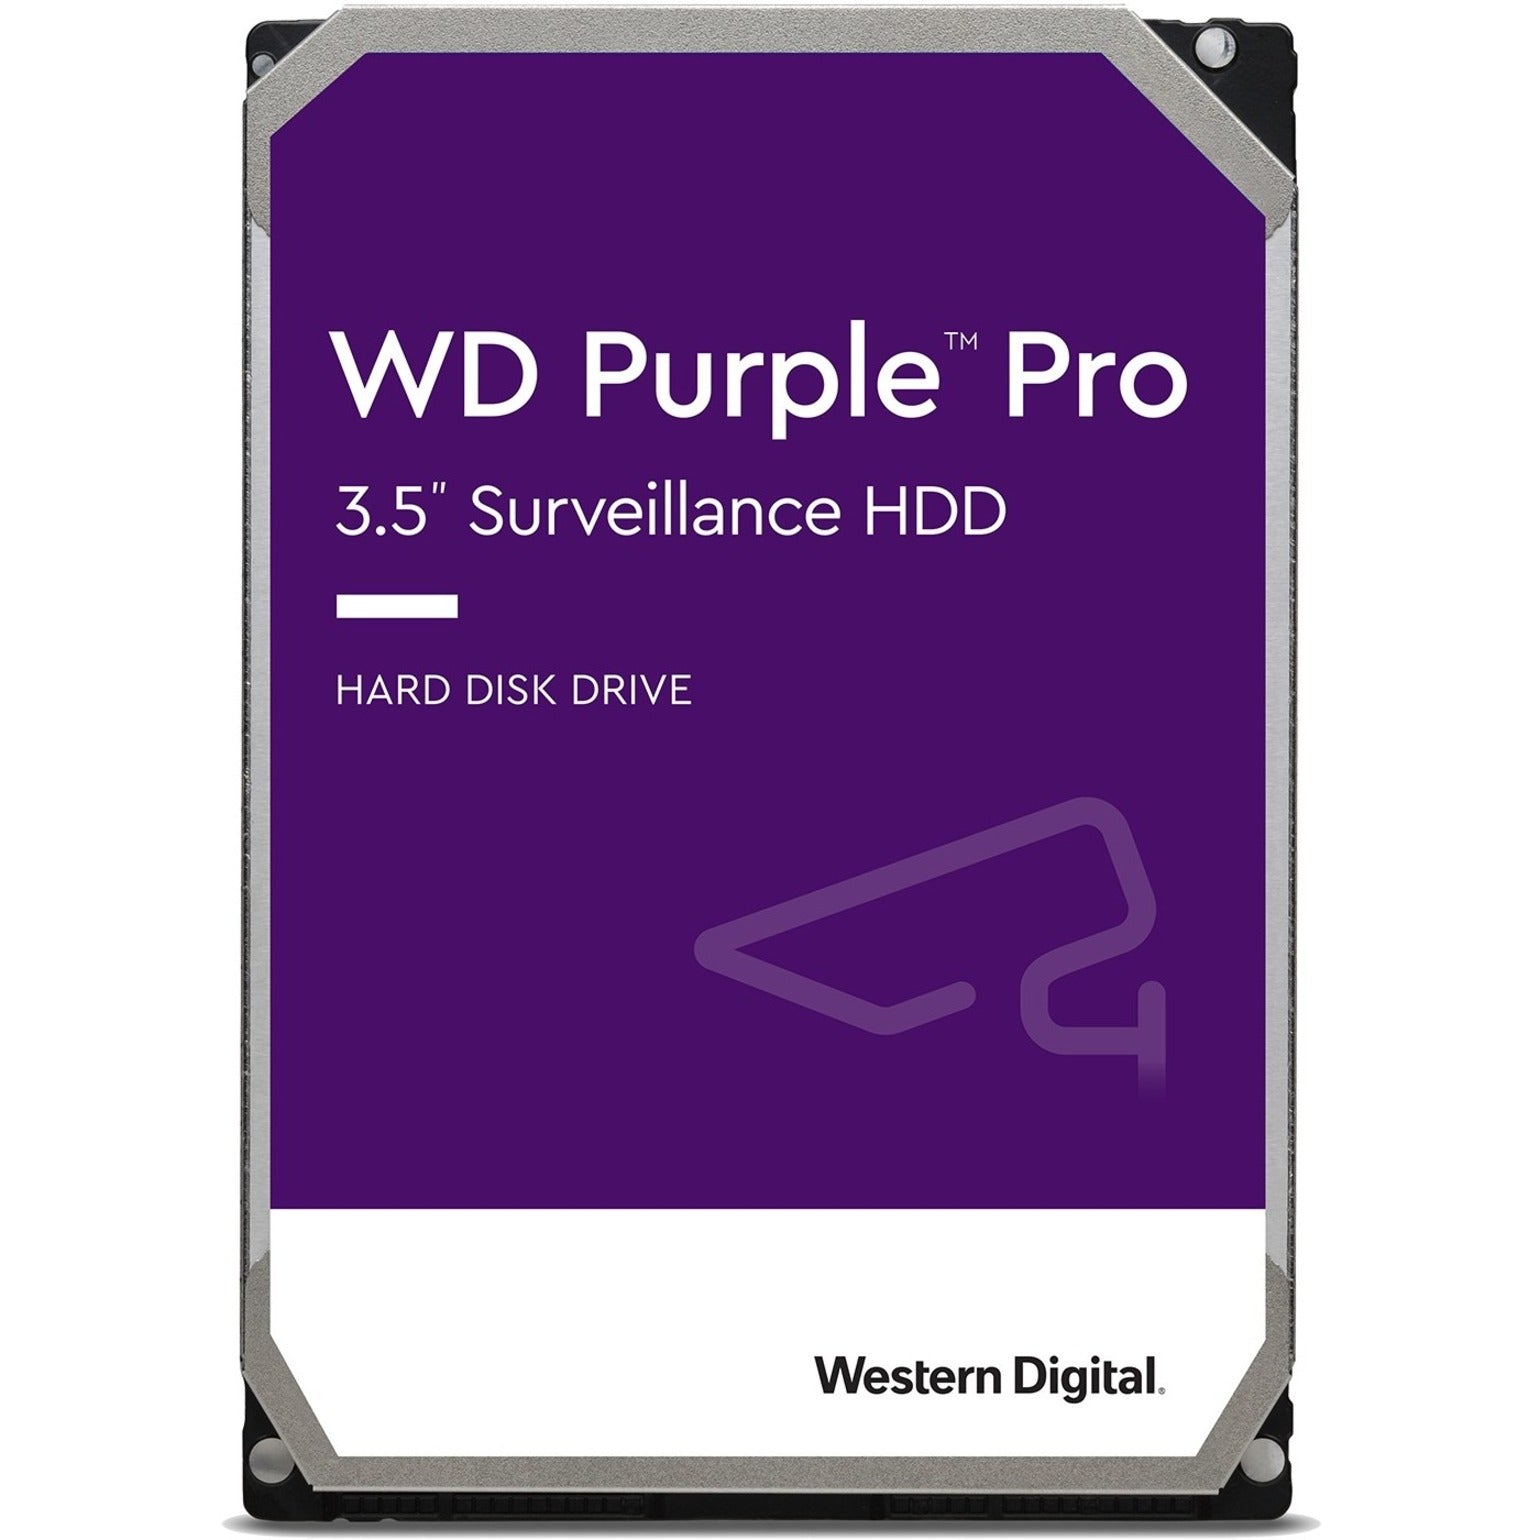 Western Digital WD101PURP Purple Pro 10TB Hard Drive, 7200 RPM, 256MB Buffer, 5 Year Warranty